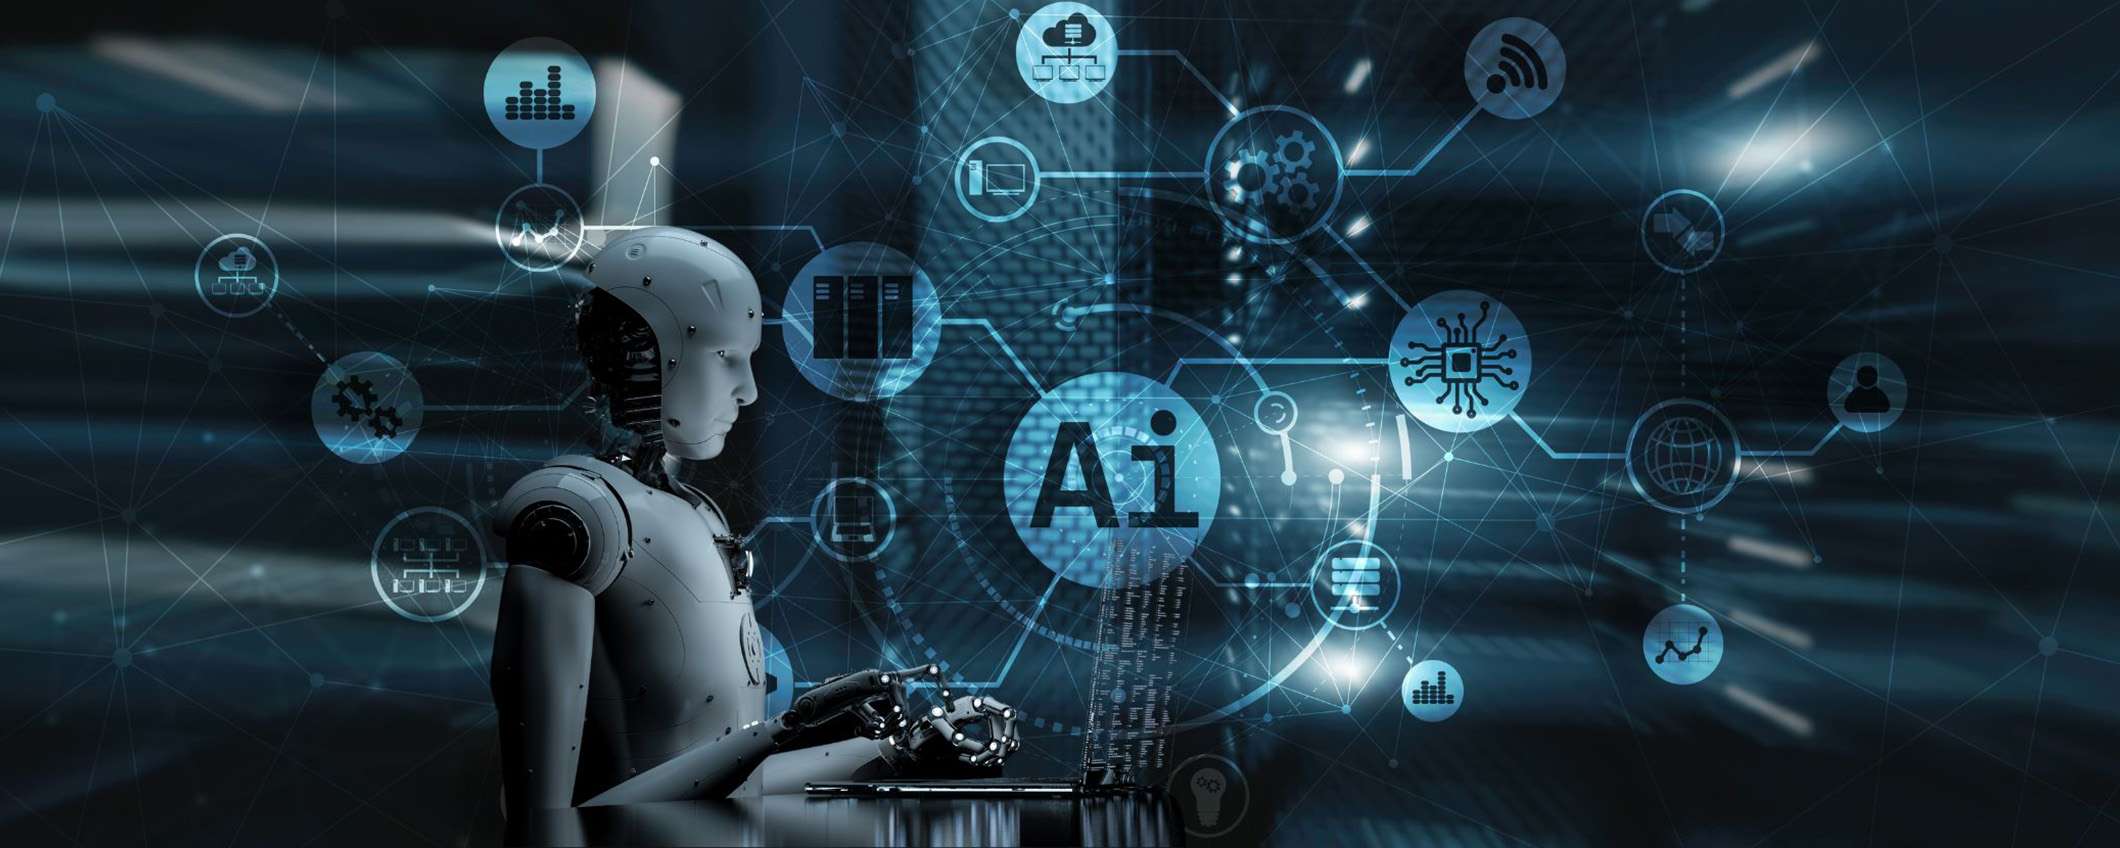 I 5 siti web più sorprendenti sull’Intelligenza Artificiale